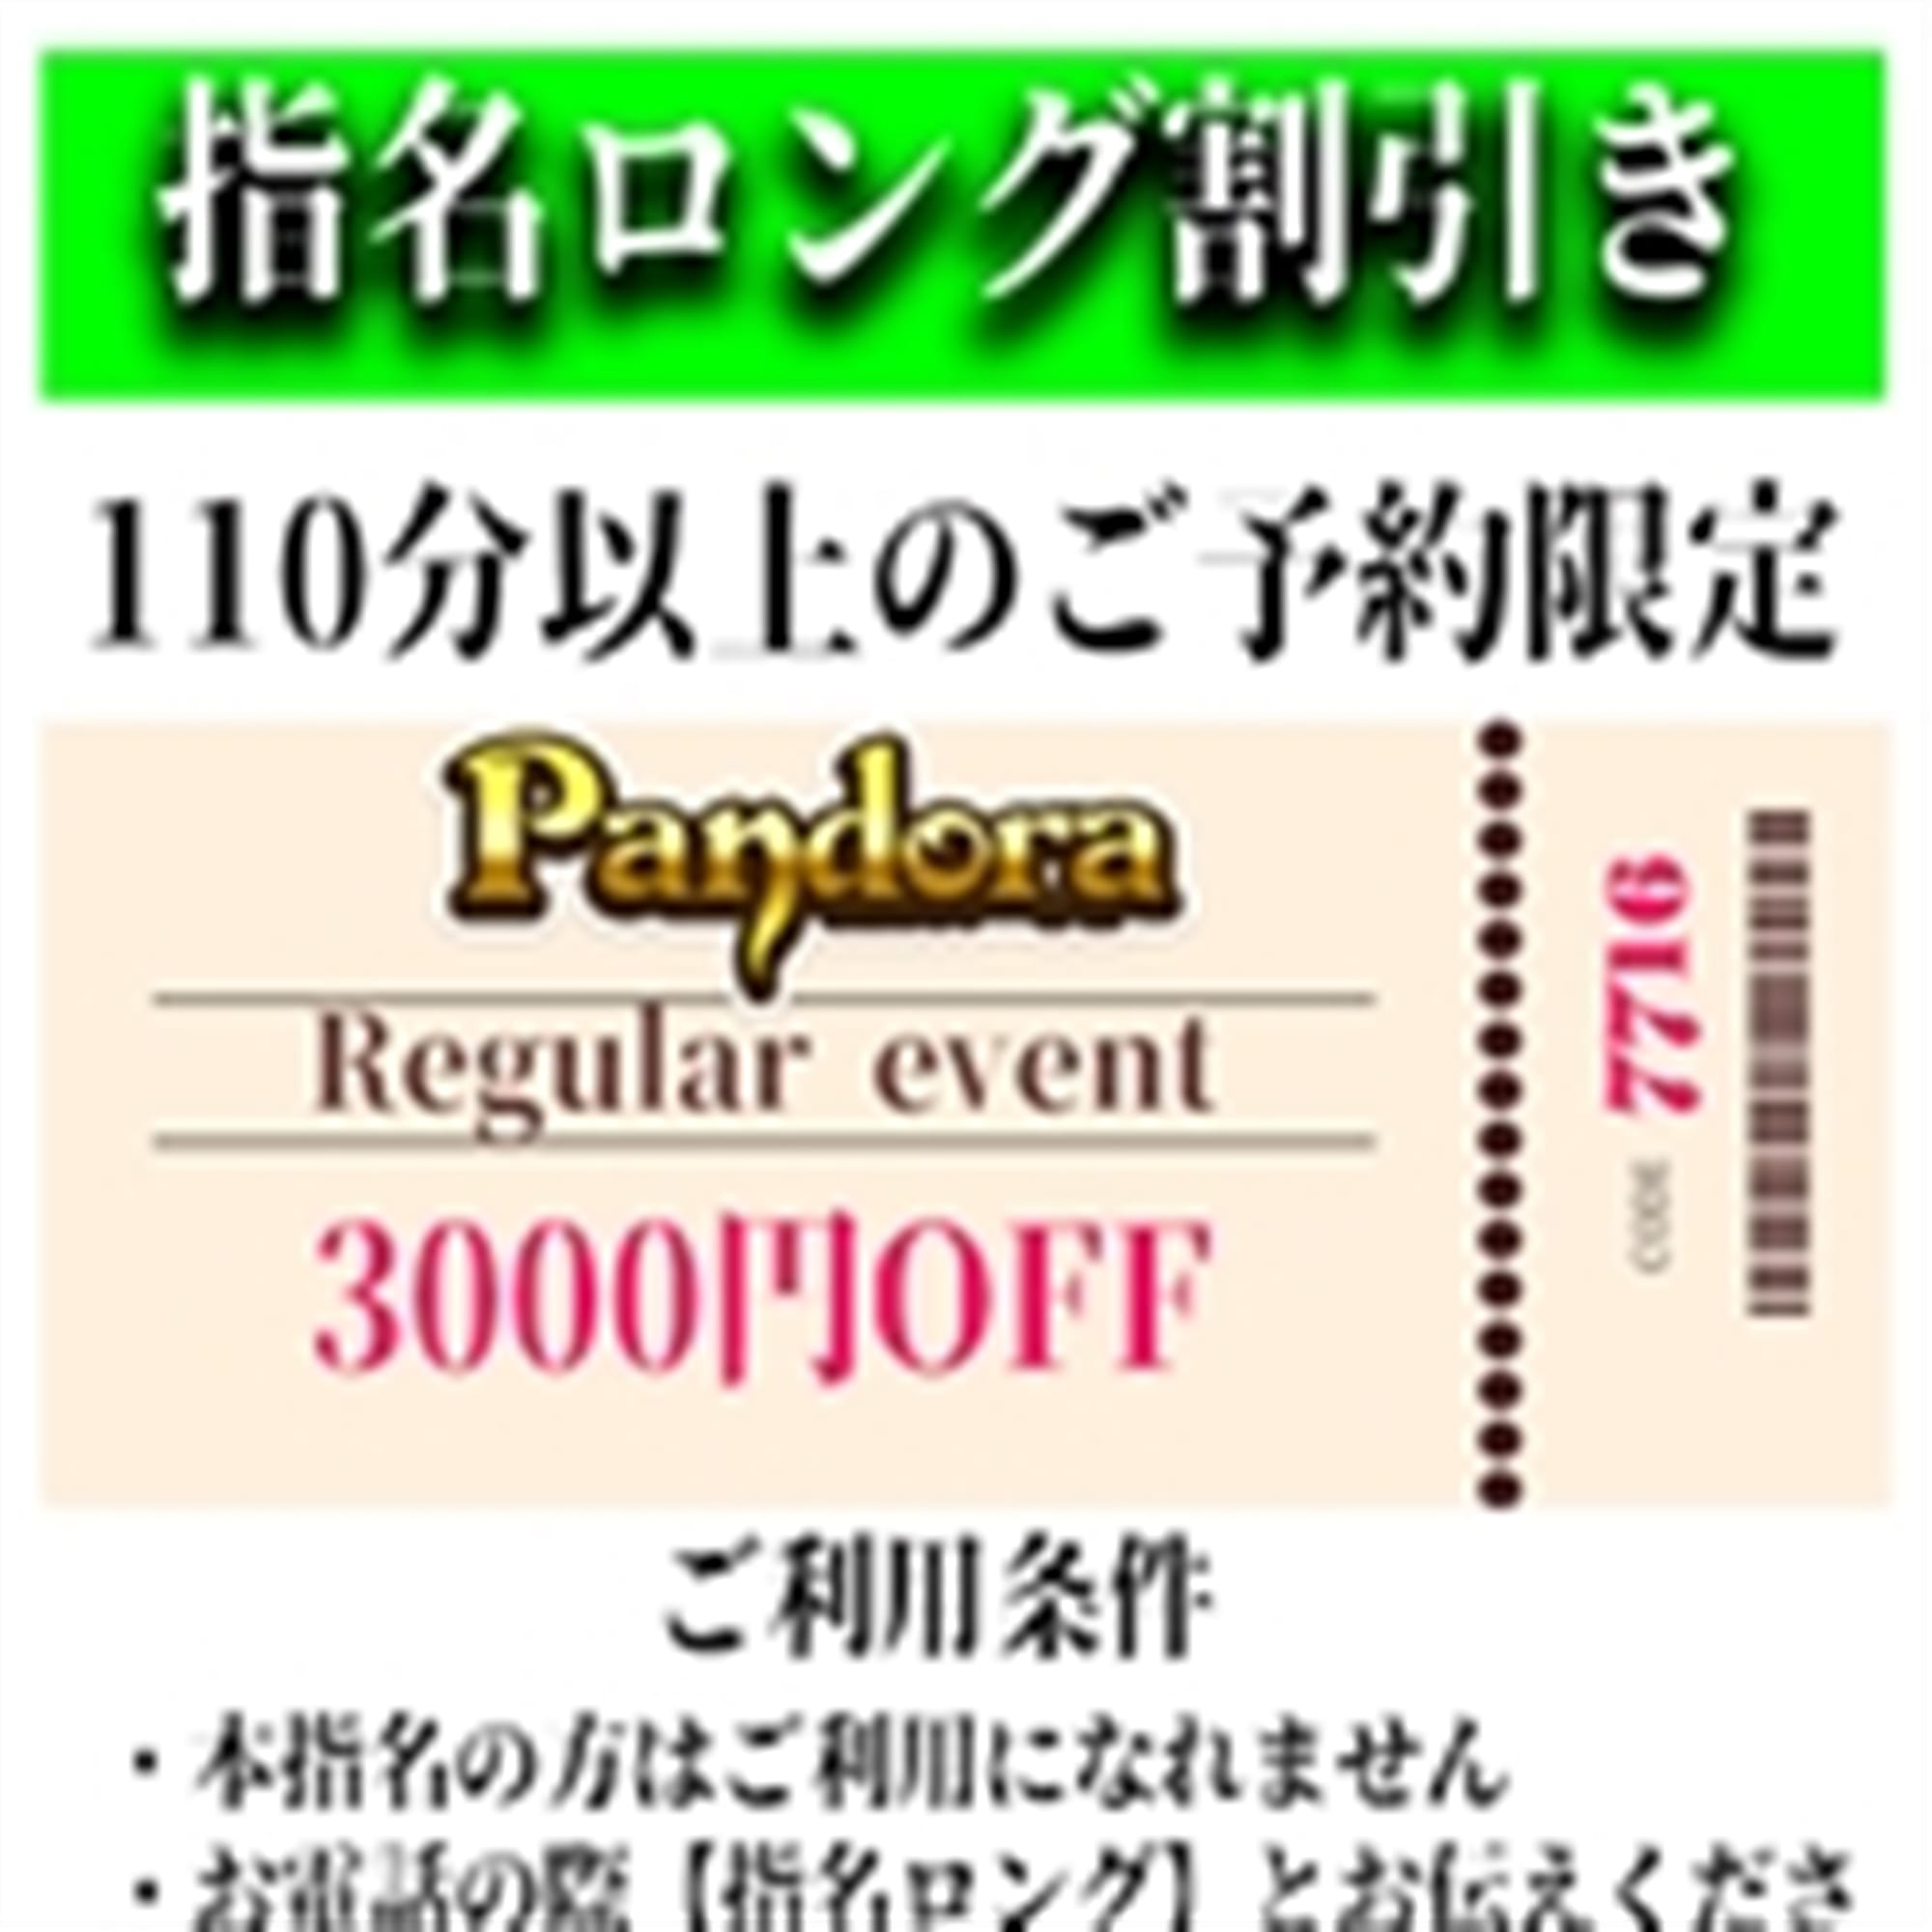 「ご指名のお客様も遊べるロングコース割引」04/25(木) 09:13 | Pandora(パンドラ)新潟のお得なニュース